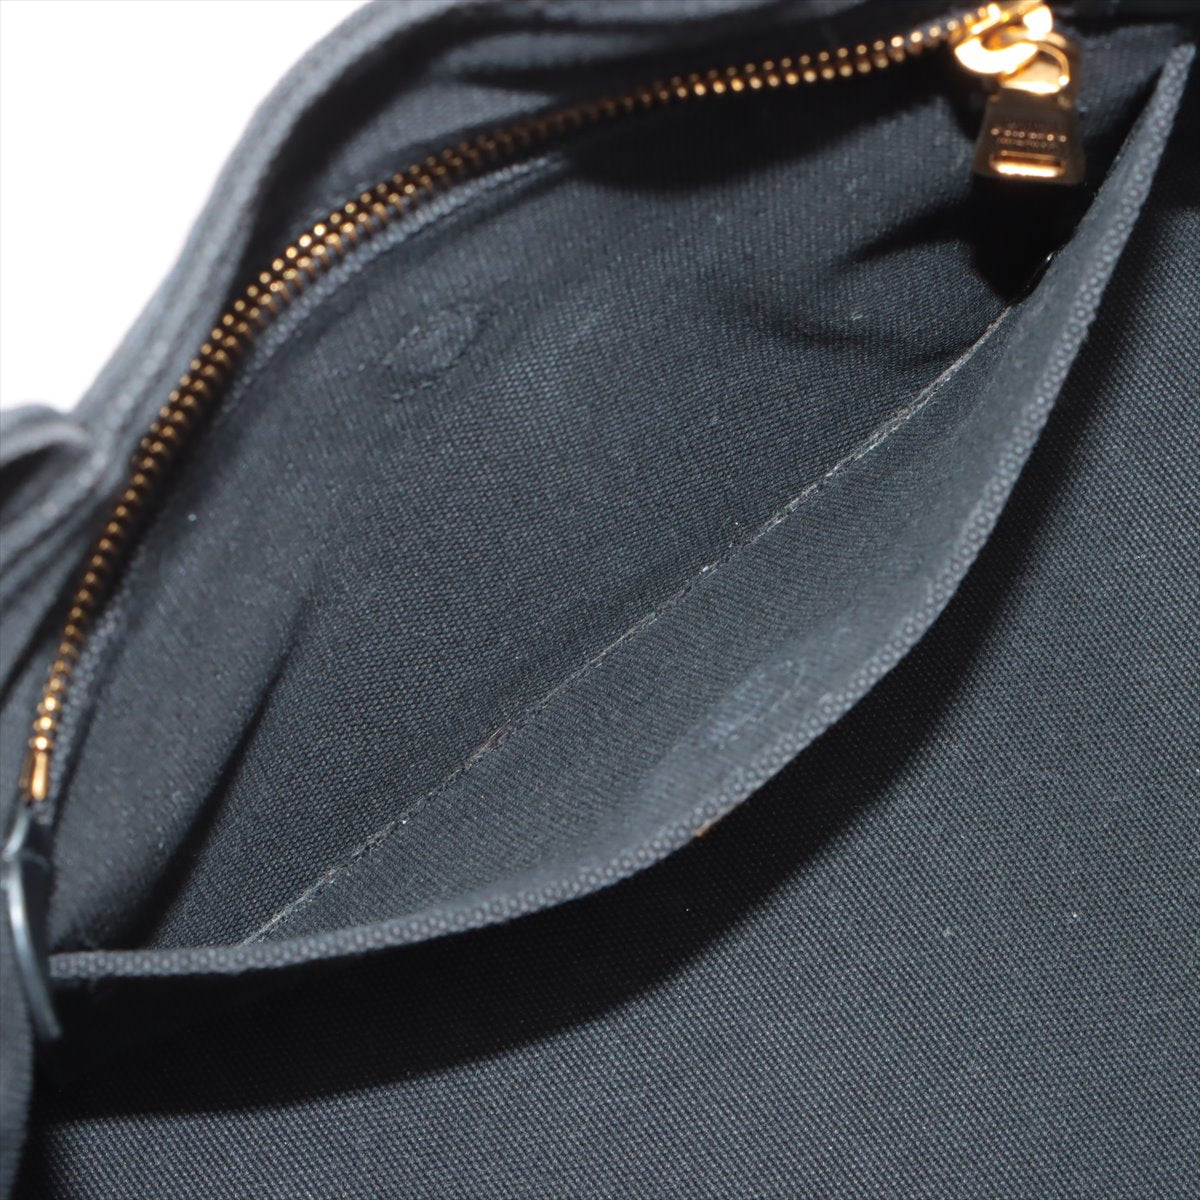 Prada Canapa Linen 2WAY Handbag Black